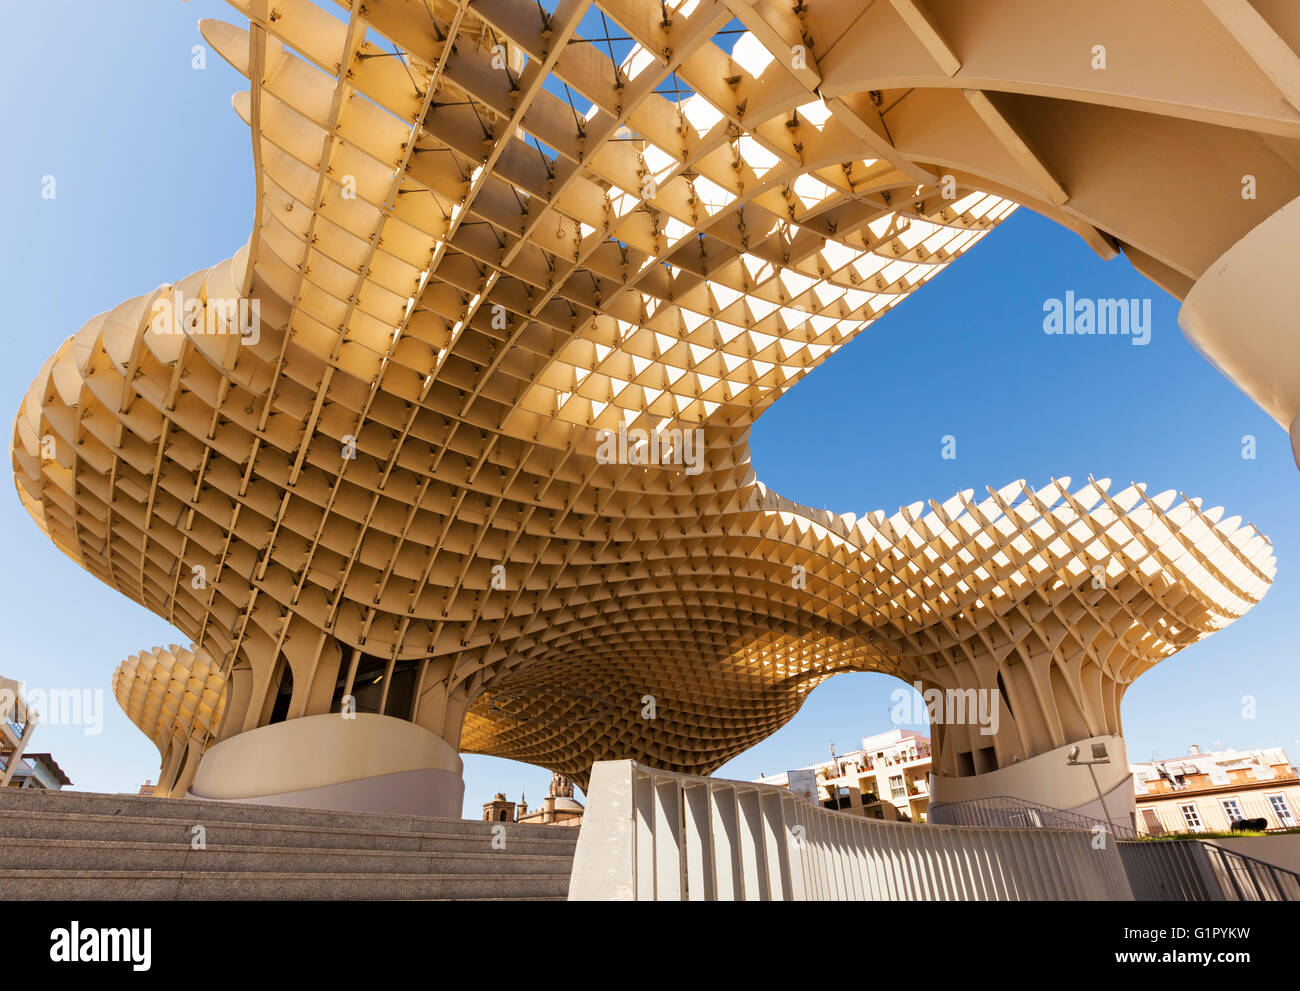 Espacio Metropol Parasol building at Plaza de la Encarnacion, Seville, Spain, a wooden structure by architect Jürgen Mayer H. Stock Photo